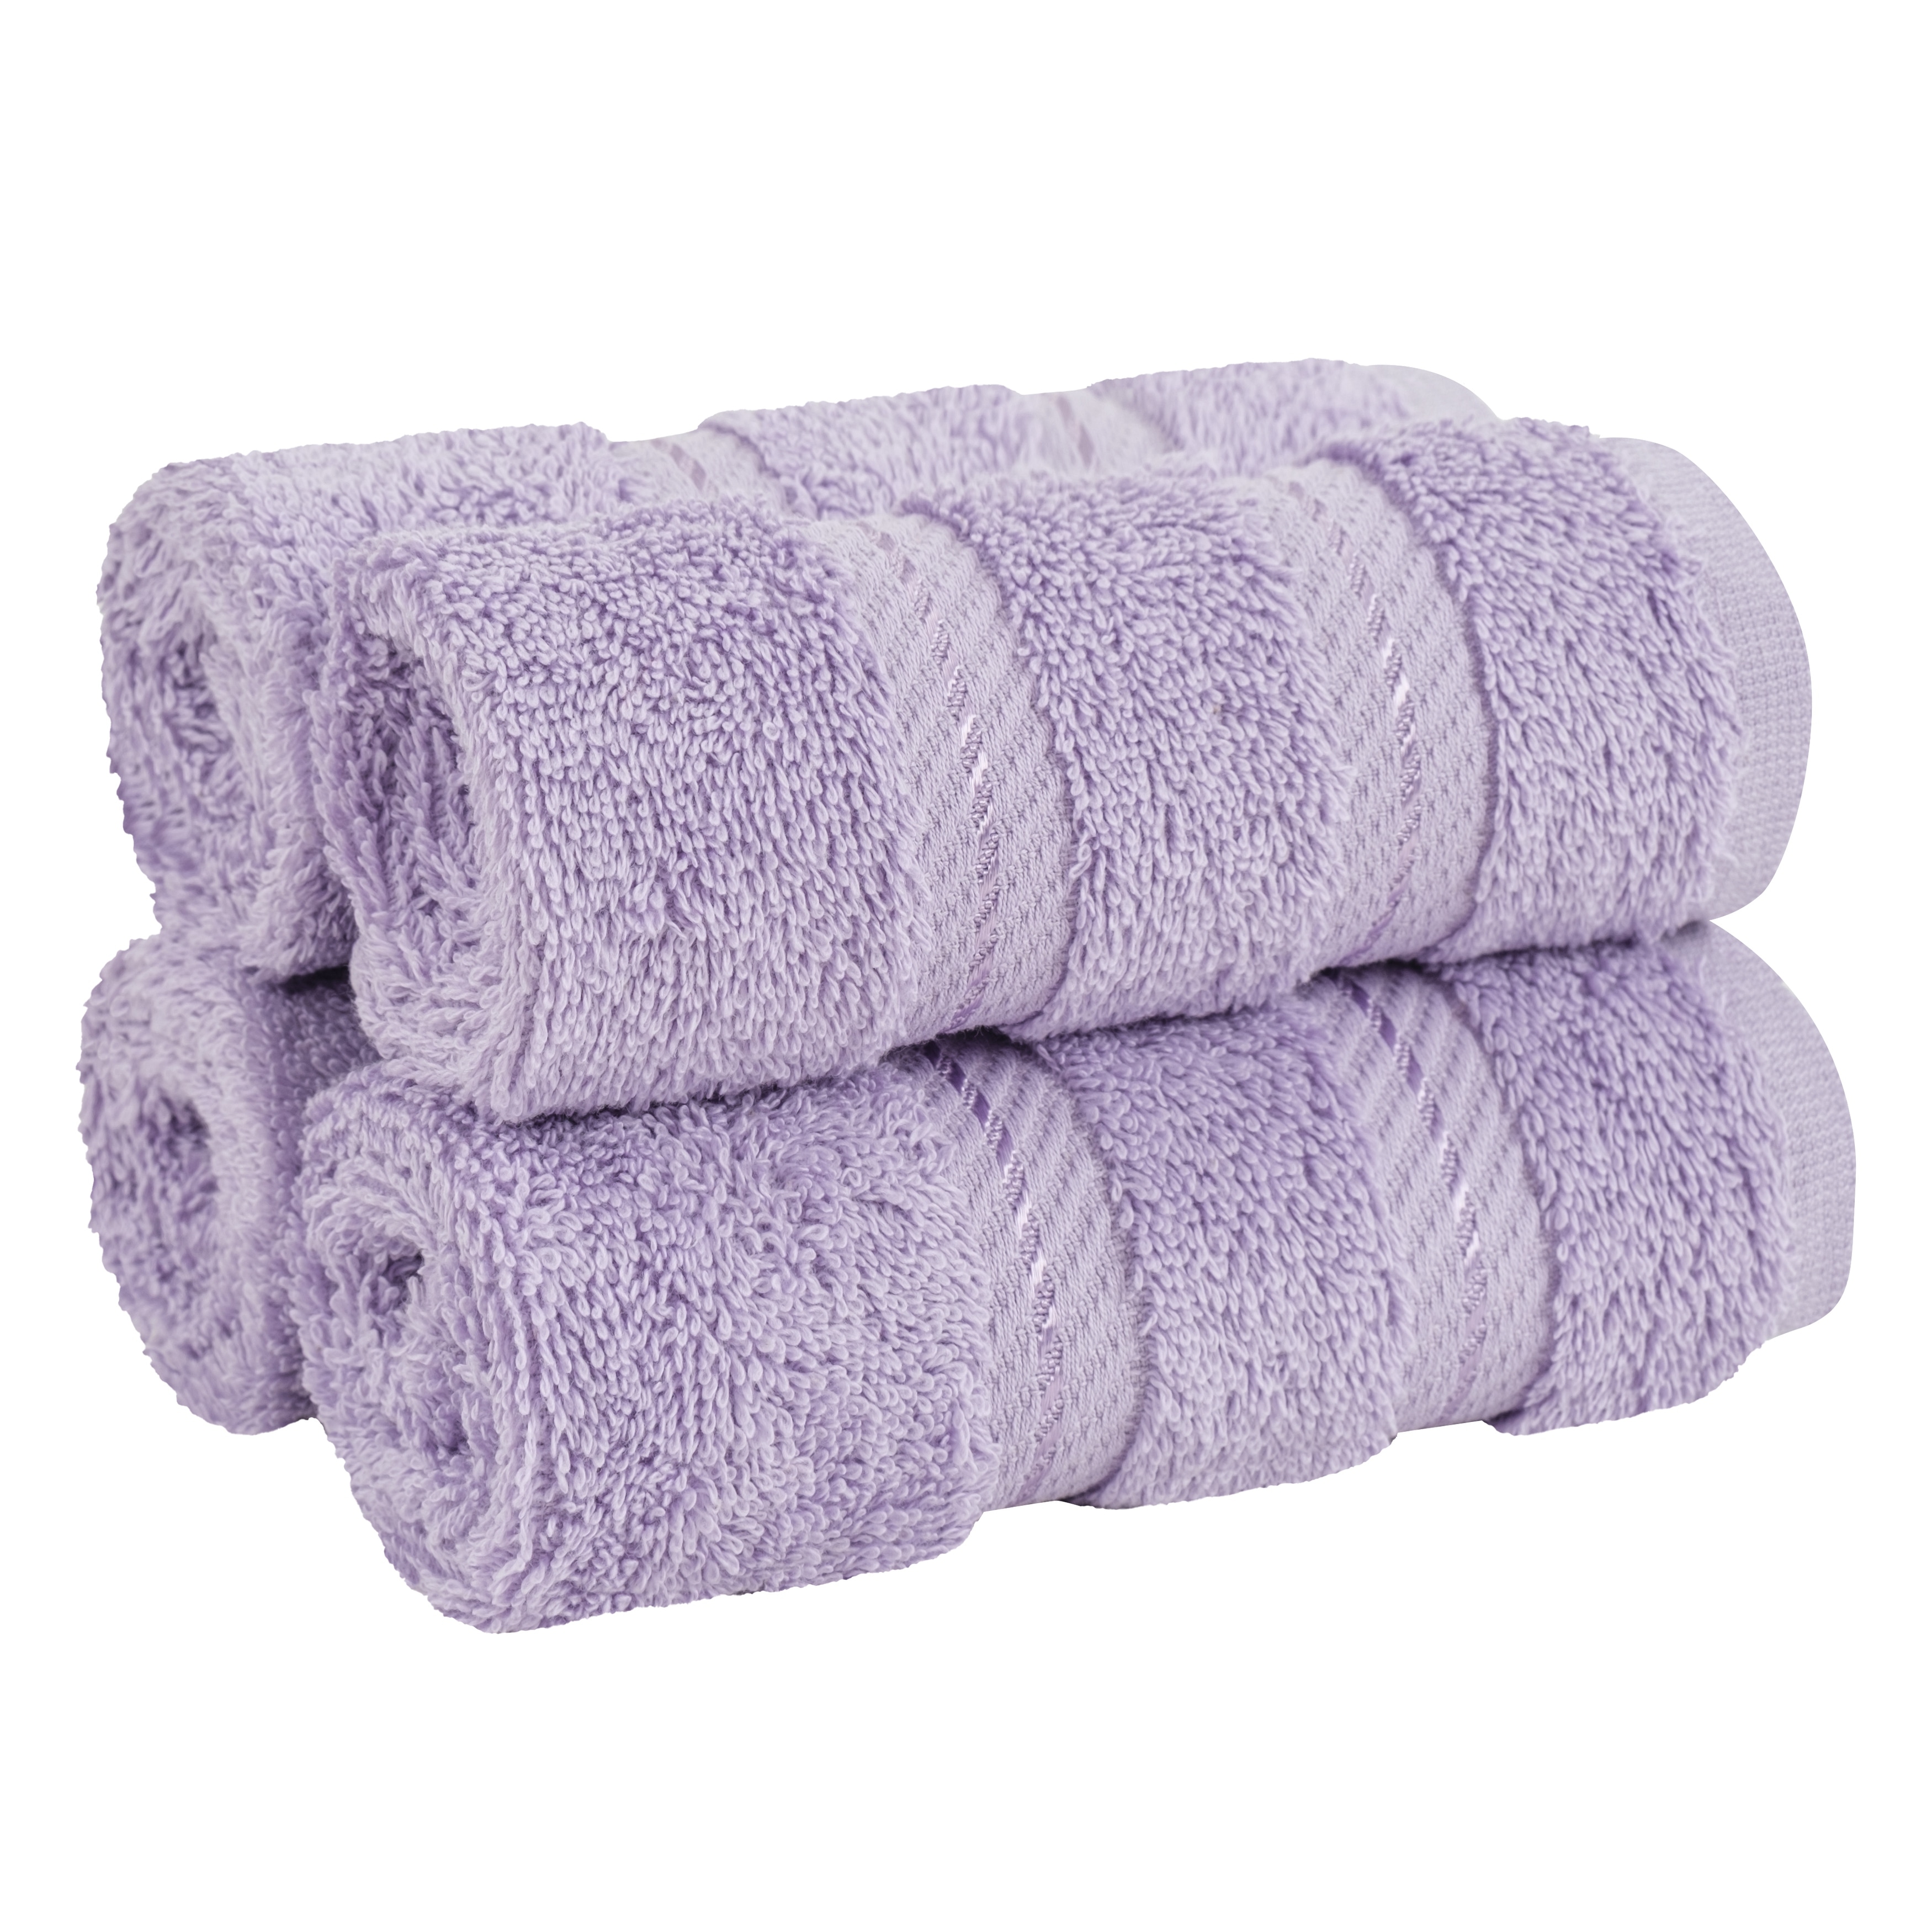 Lavender cotton tea towels - set of 2